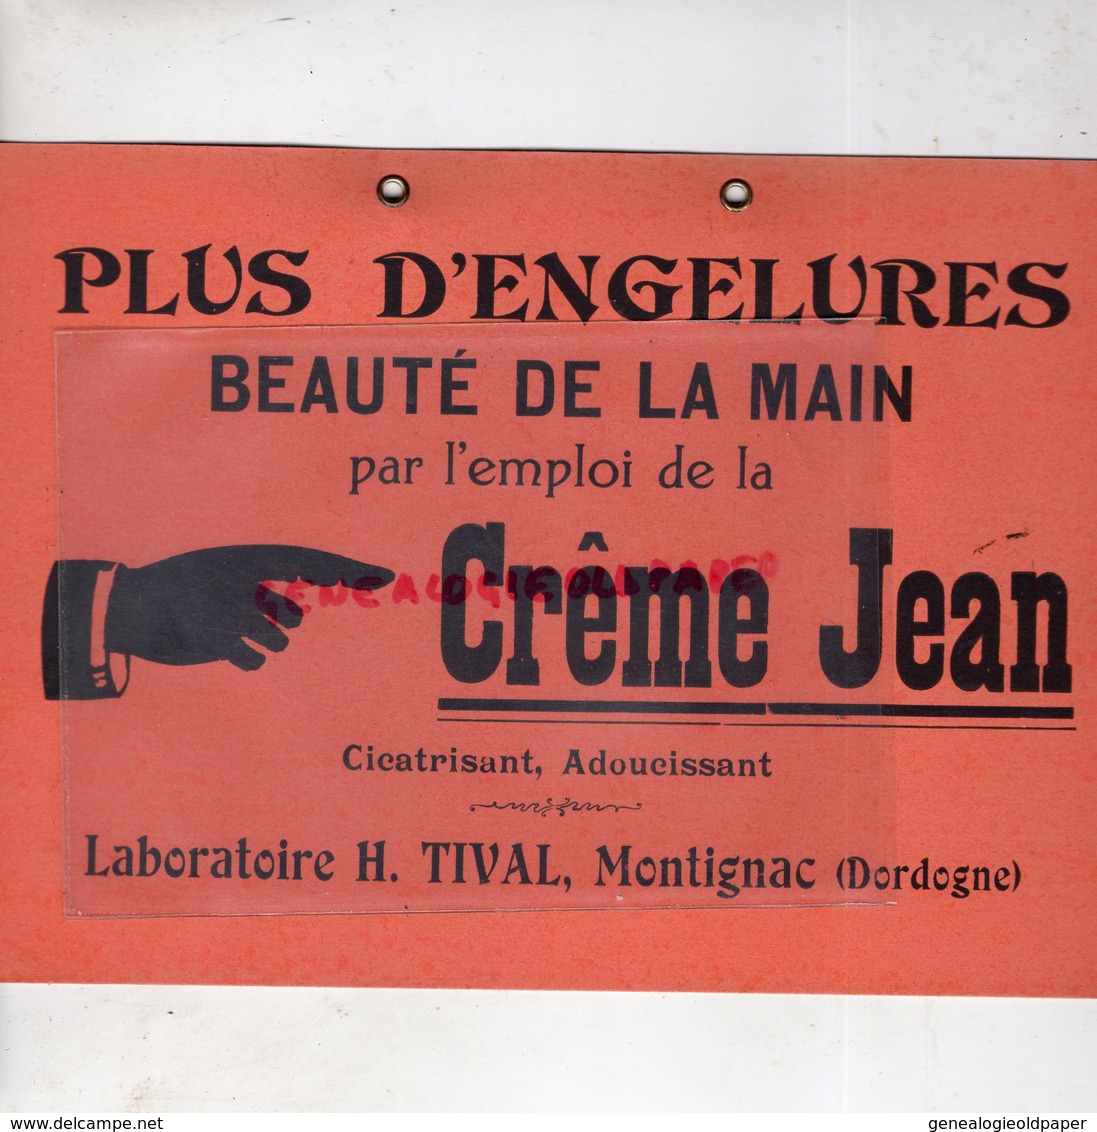 24- MONTIGNAC - RARE BEAU CARTON PUBLICITAIRE CREME JEAN -LABORATOIRE H. TIVAL - ENGELURES BEAUTE DE LA MAIN - Advertising